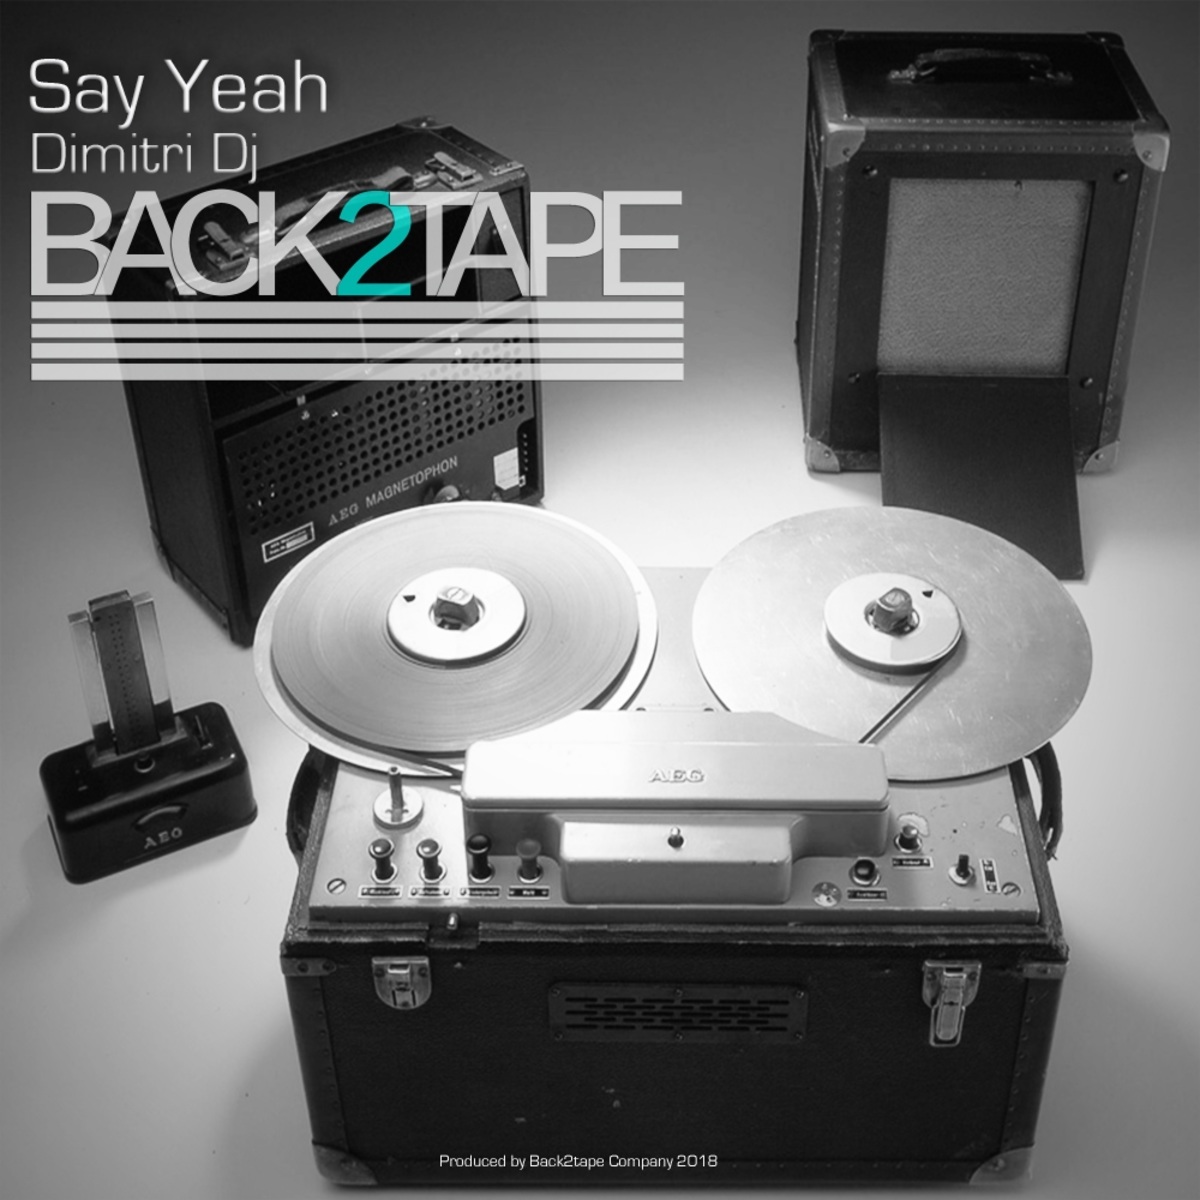 Dimitri Dj - Say Yeah / Back2tape